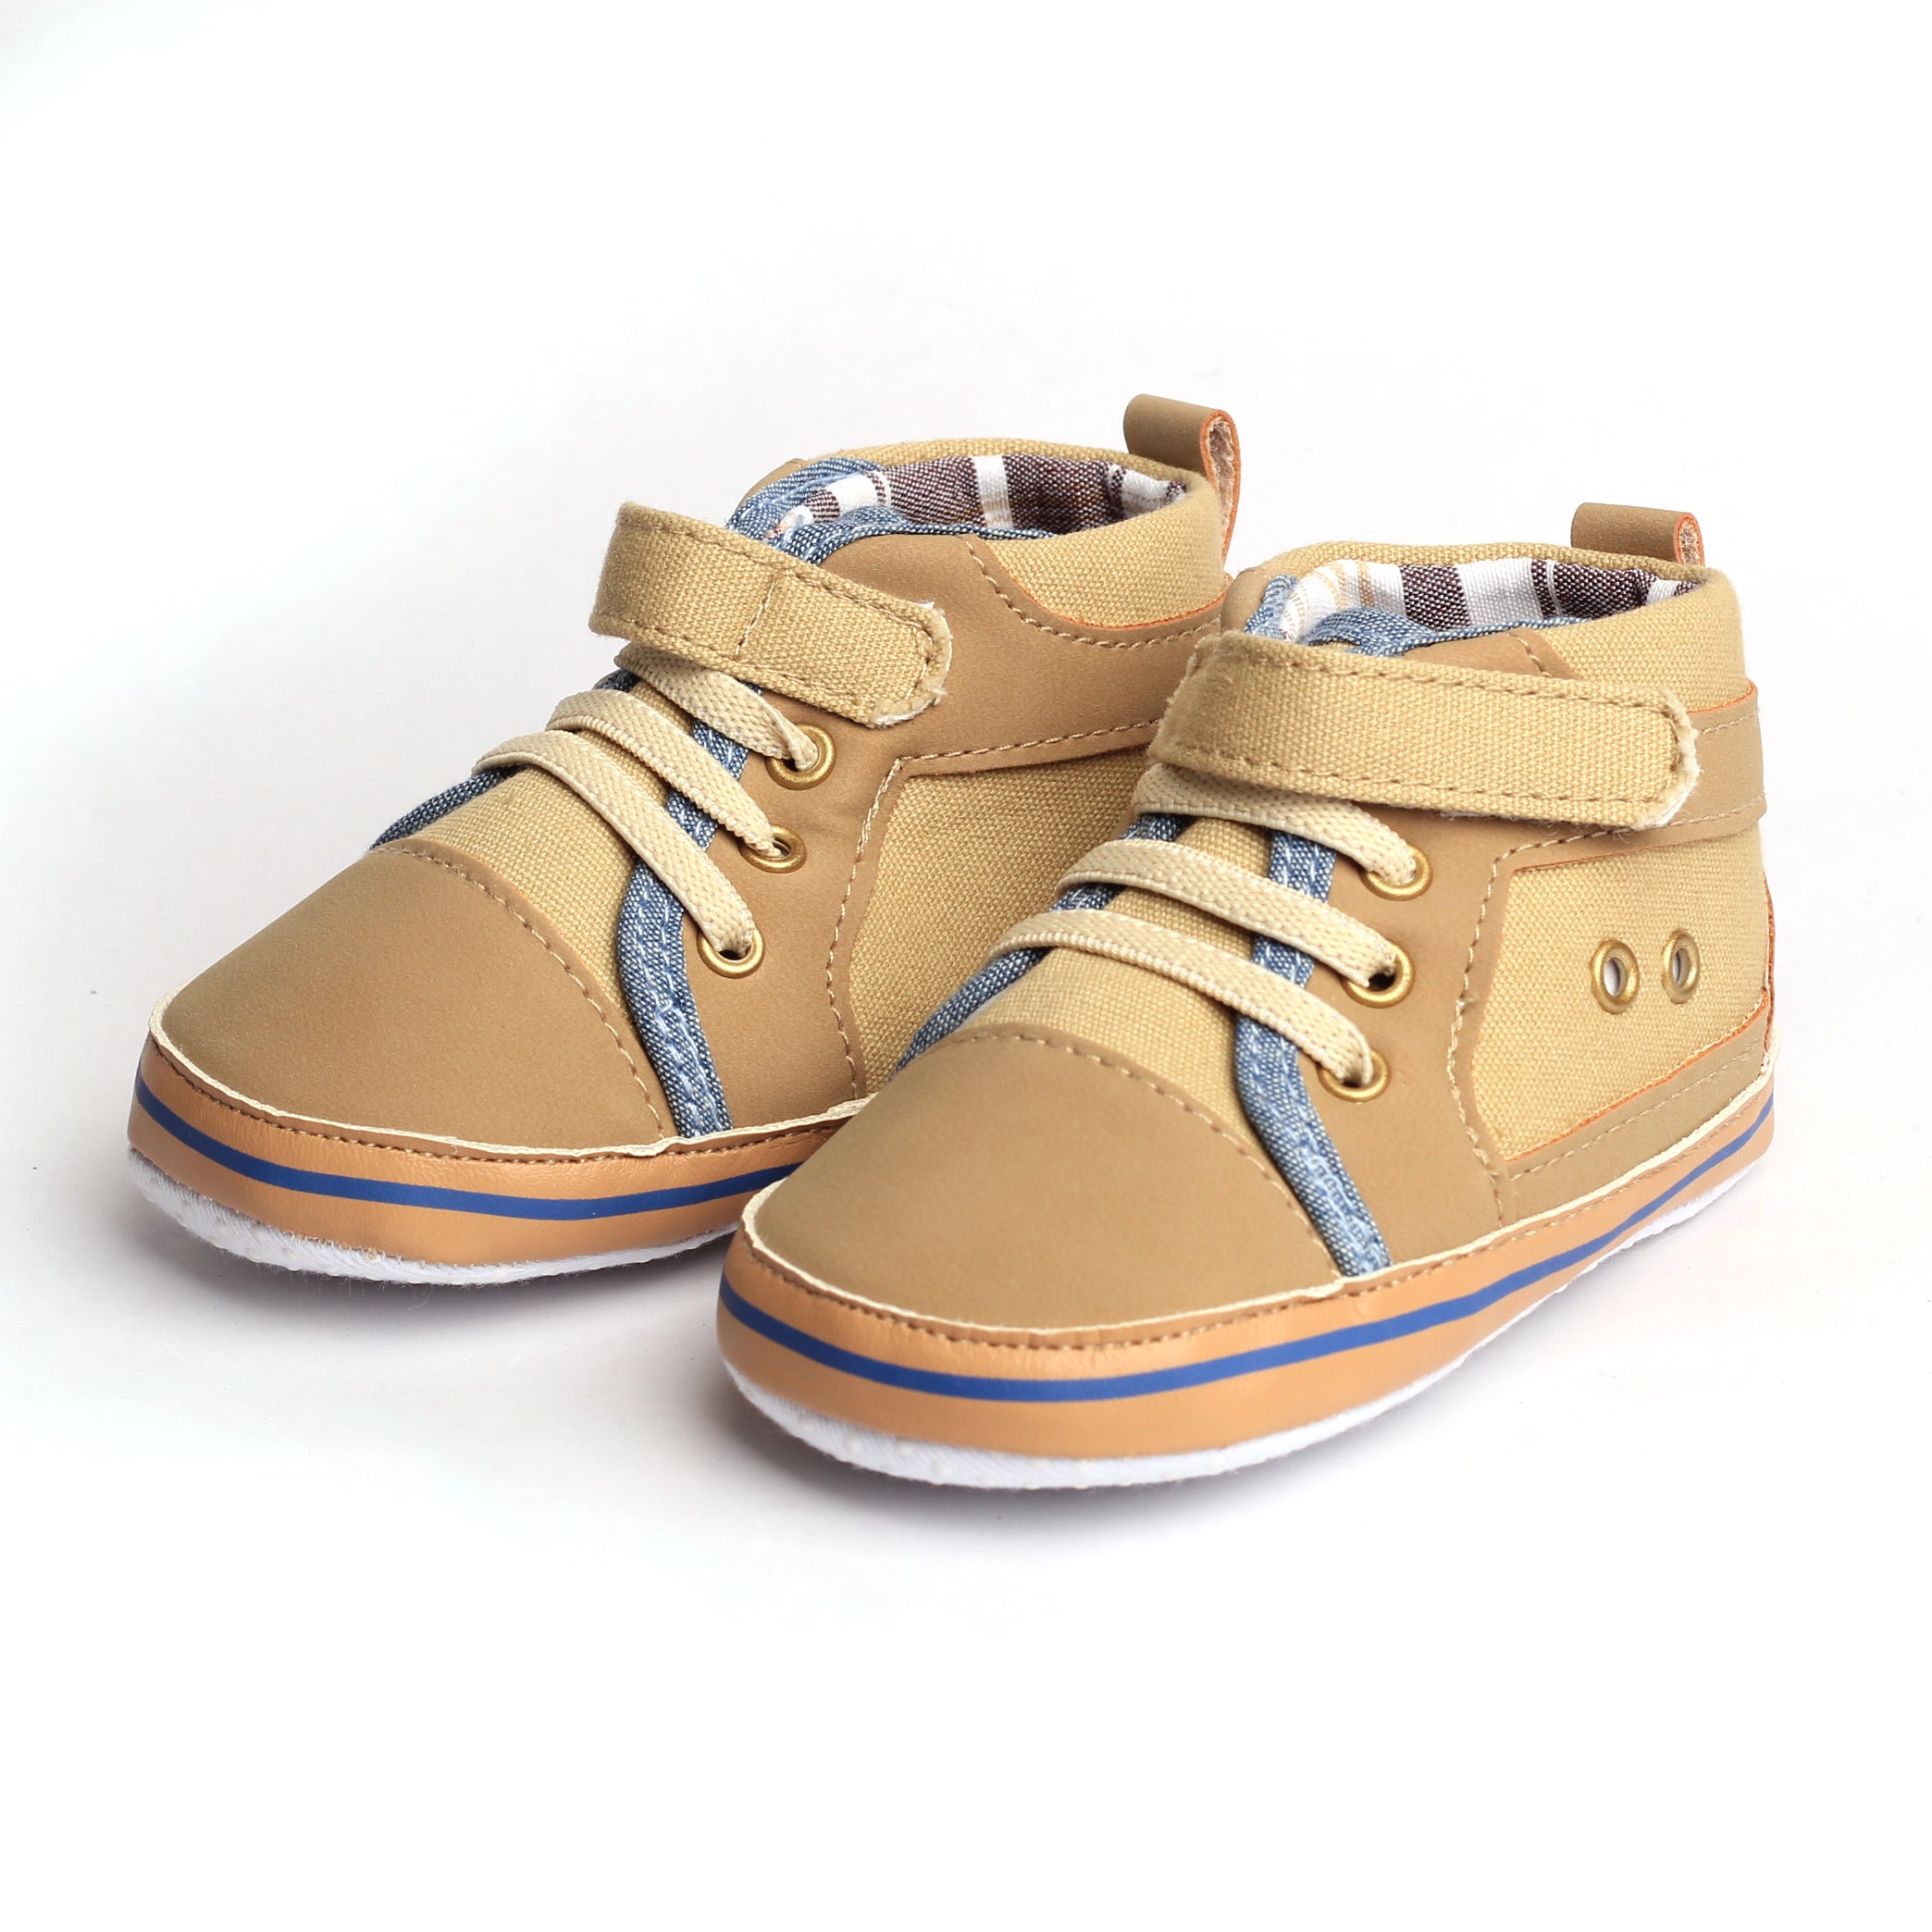 Baby Me Boys Infant Crib Shoes (B19430)